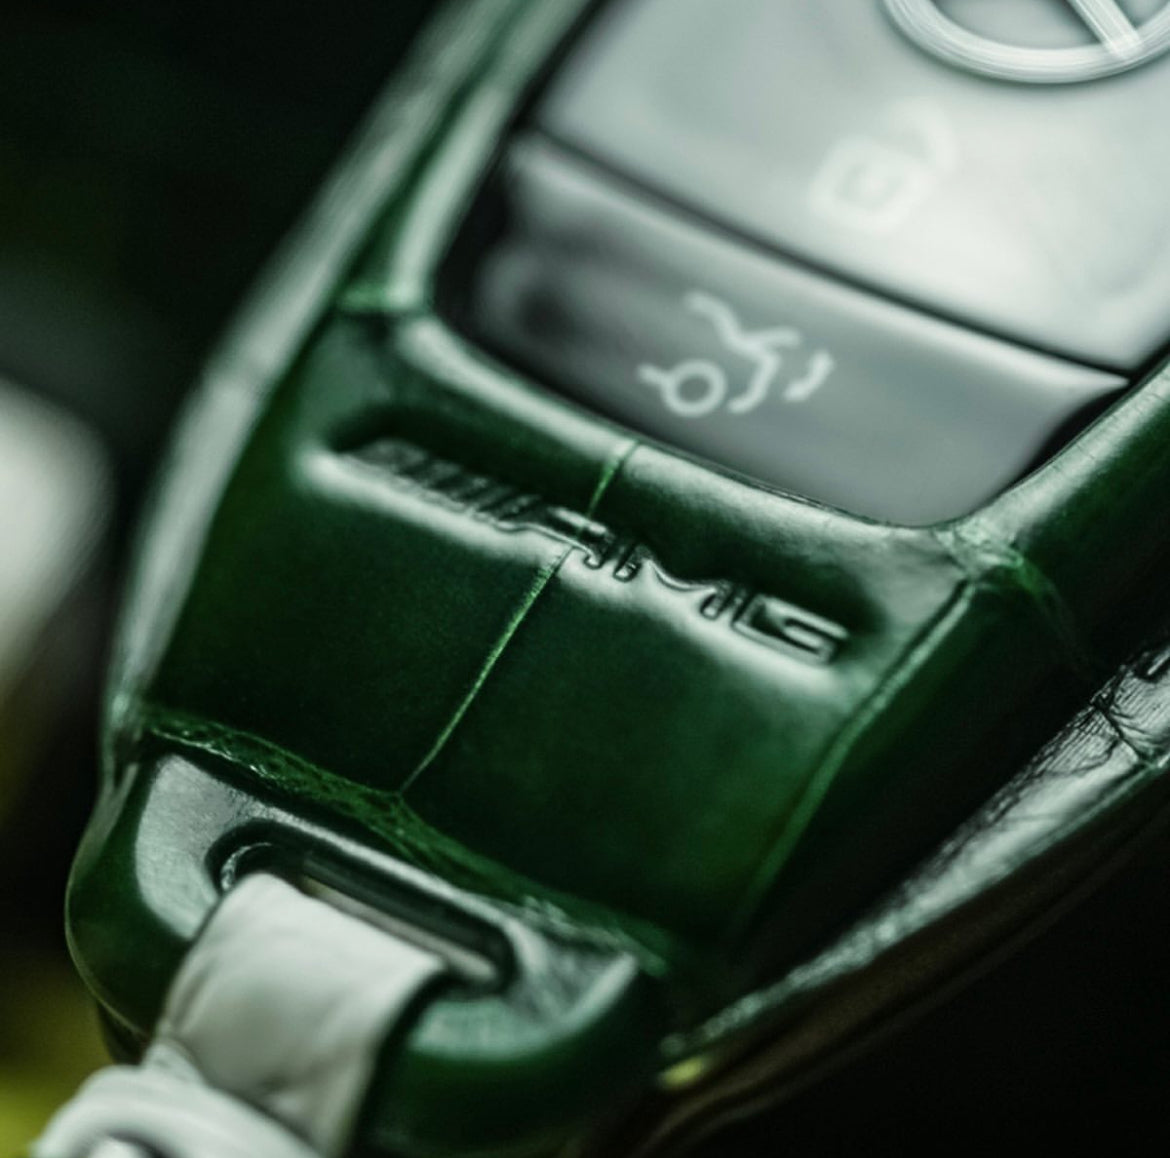 غطاء مفتاح مرسيدس AMG موديل النوع 1 - اطلب طلبك حسب الطلب